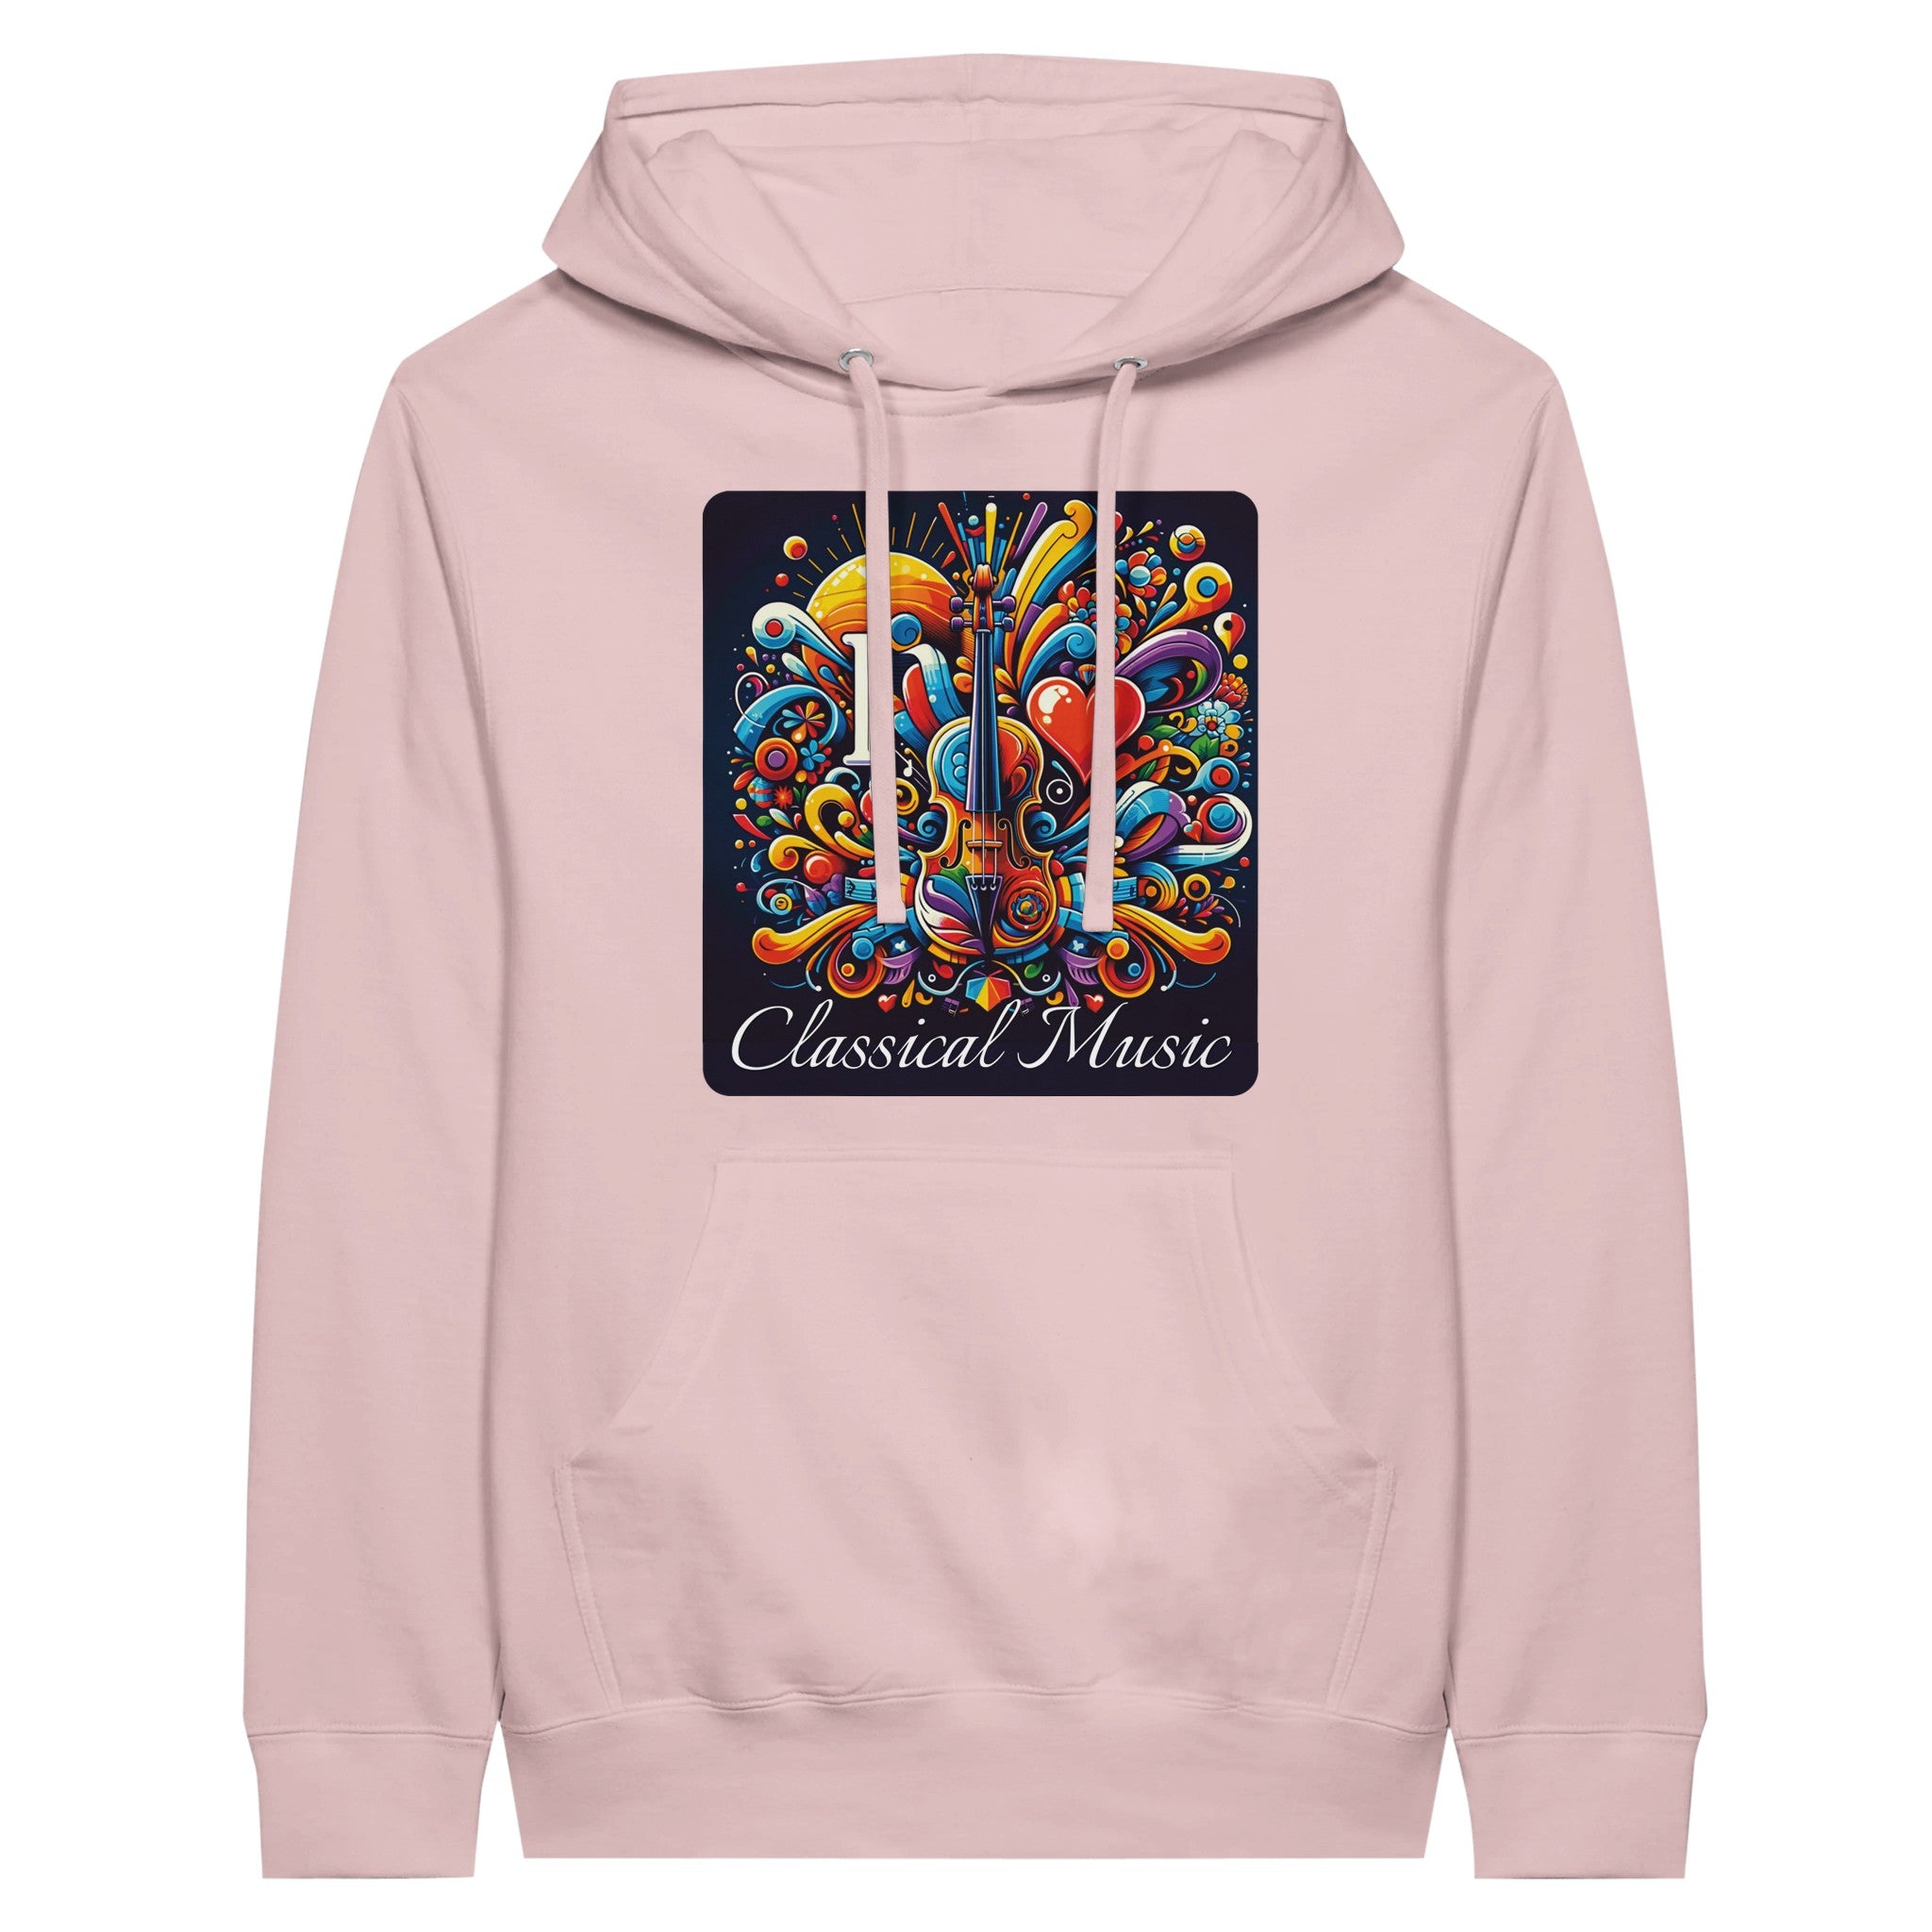 "I love Classical Music" Premium unisex hoodie